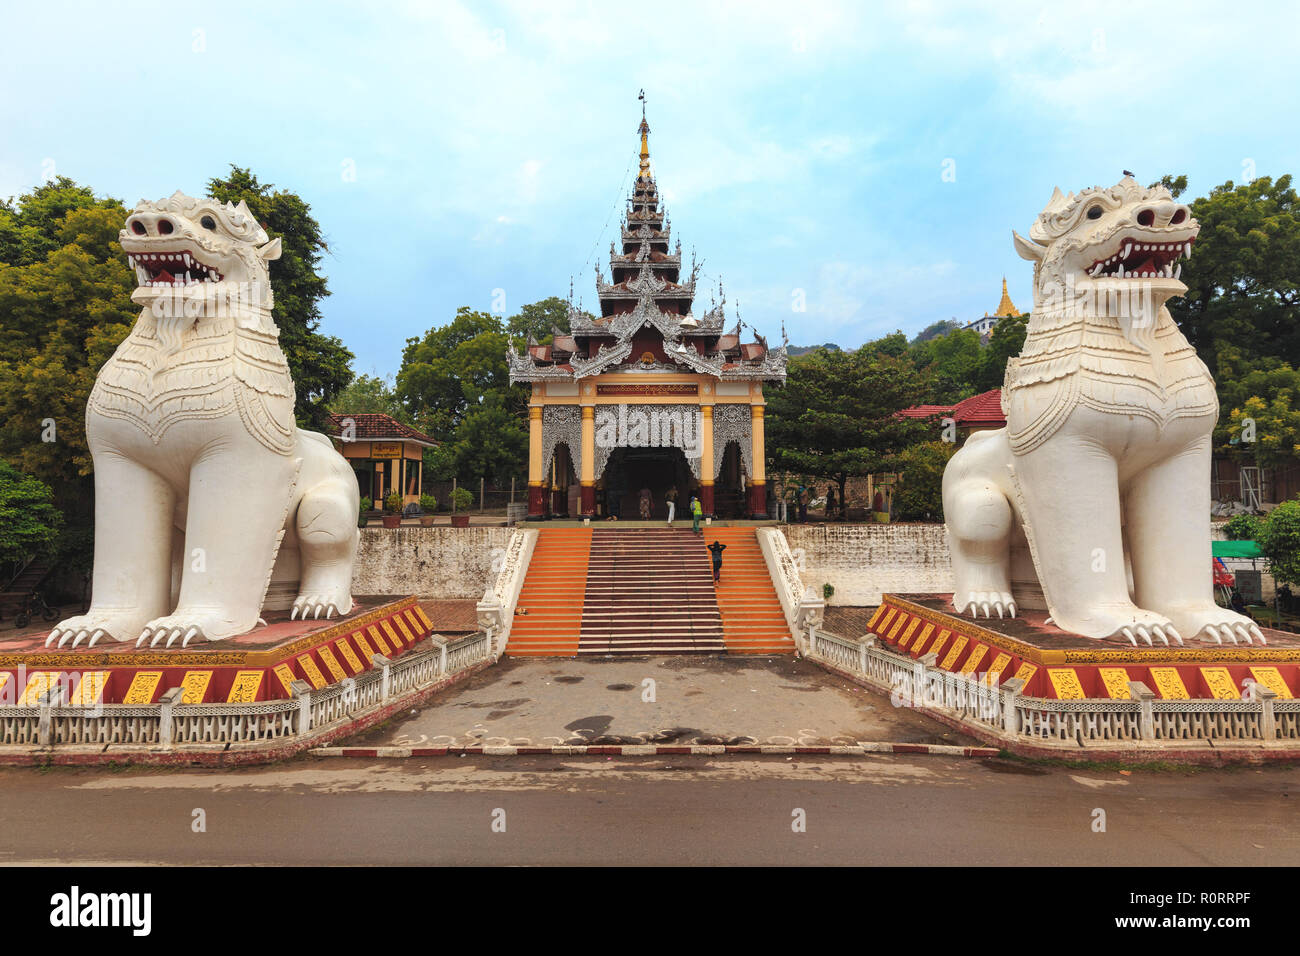 Buddhist statues lion qui garde l'entrée de la colline de Mandalay, au Myanmar (Birmanie) Banque D'Images